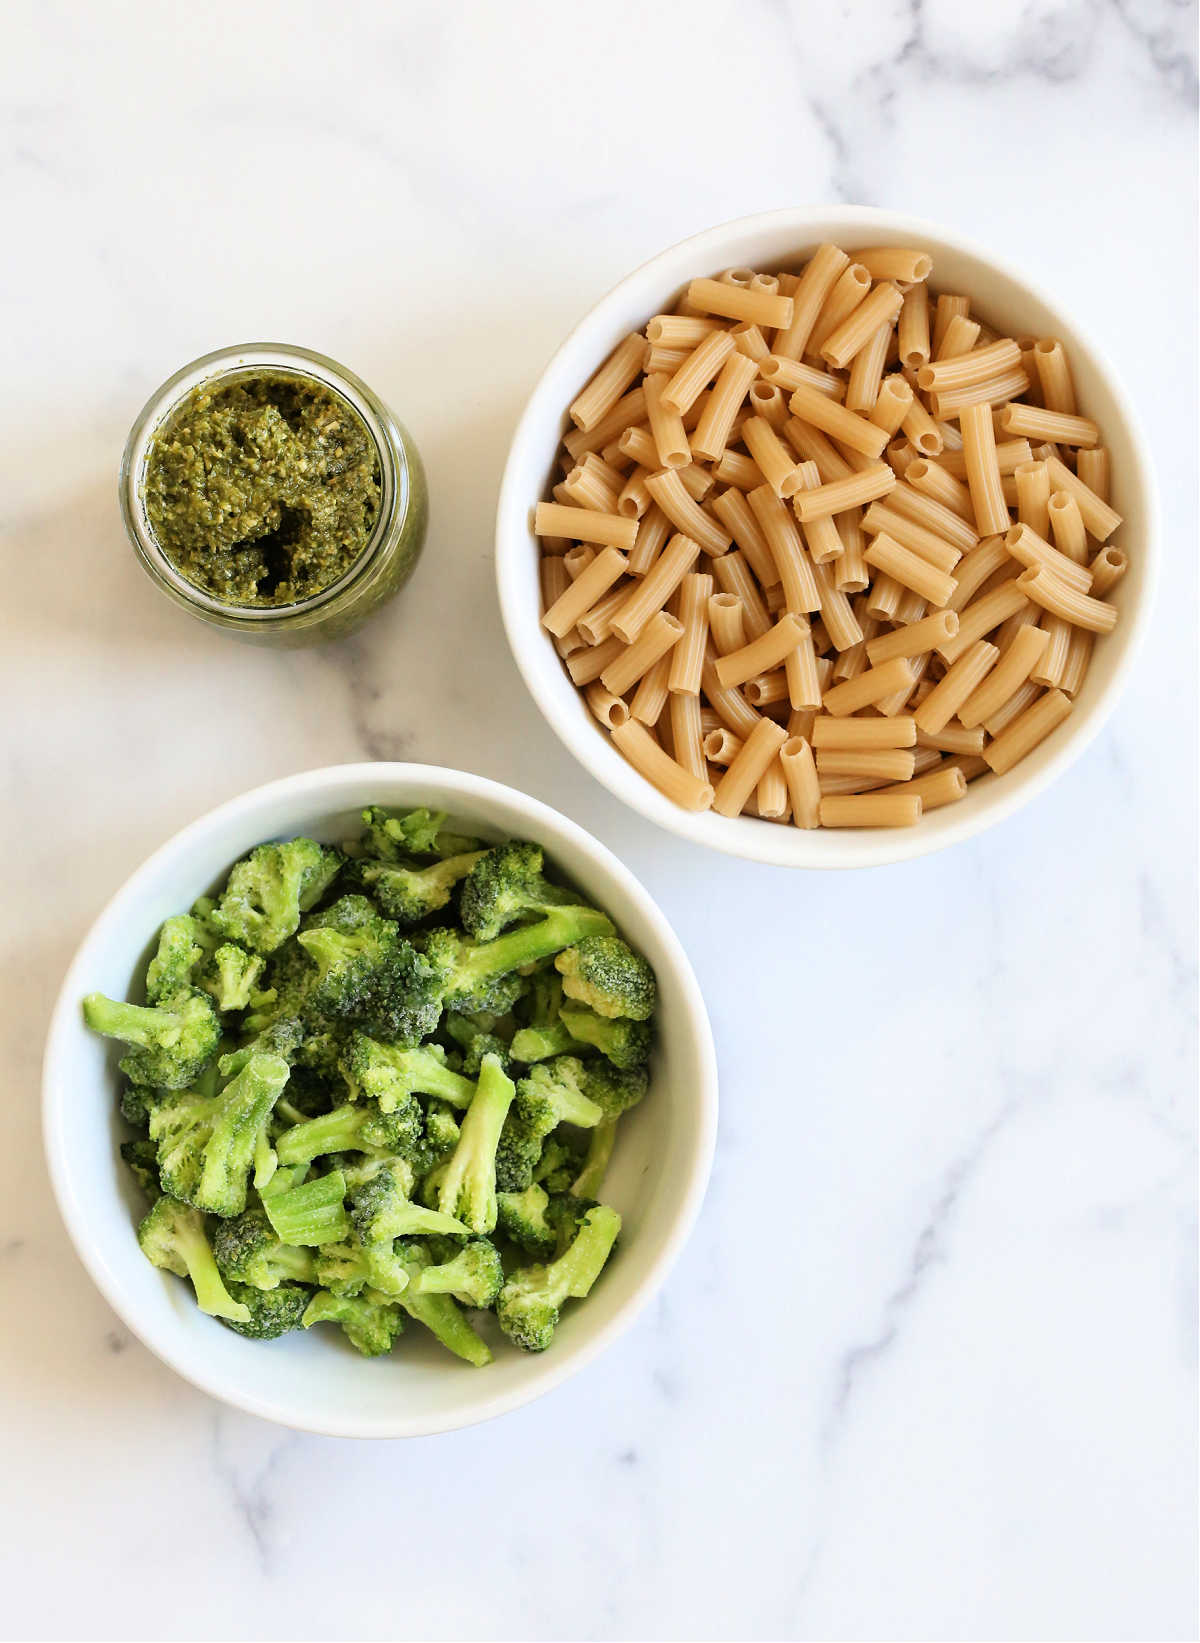 gluten free pasta noodles, broccoli, and cilantro pesto